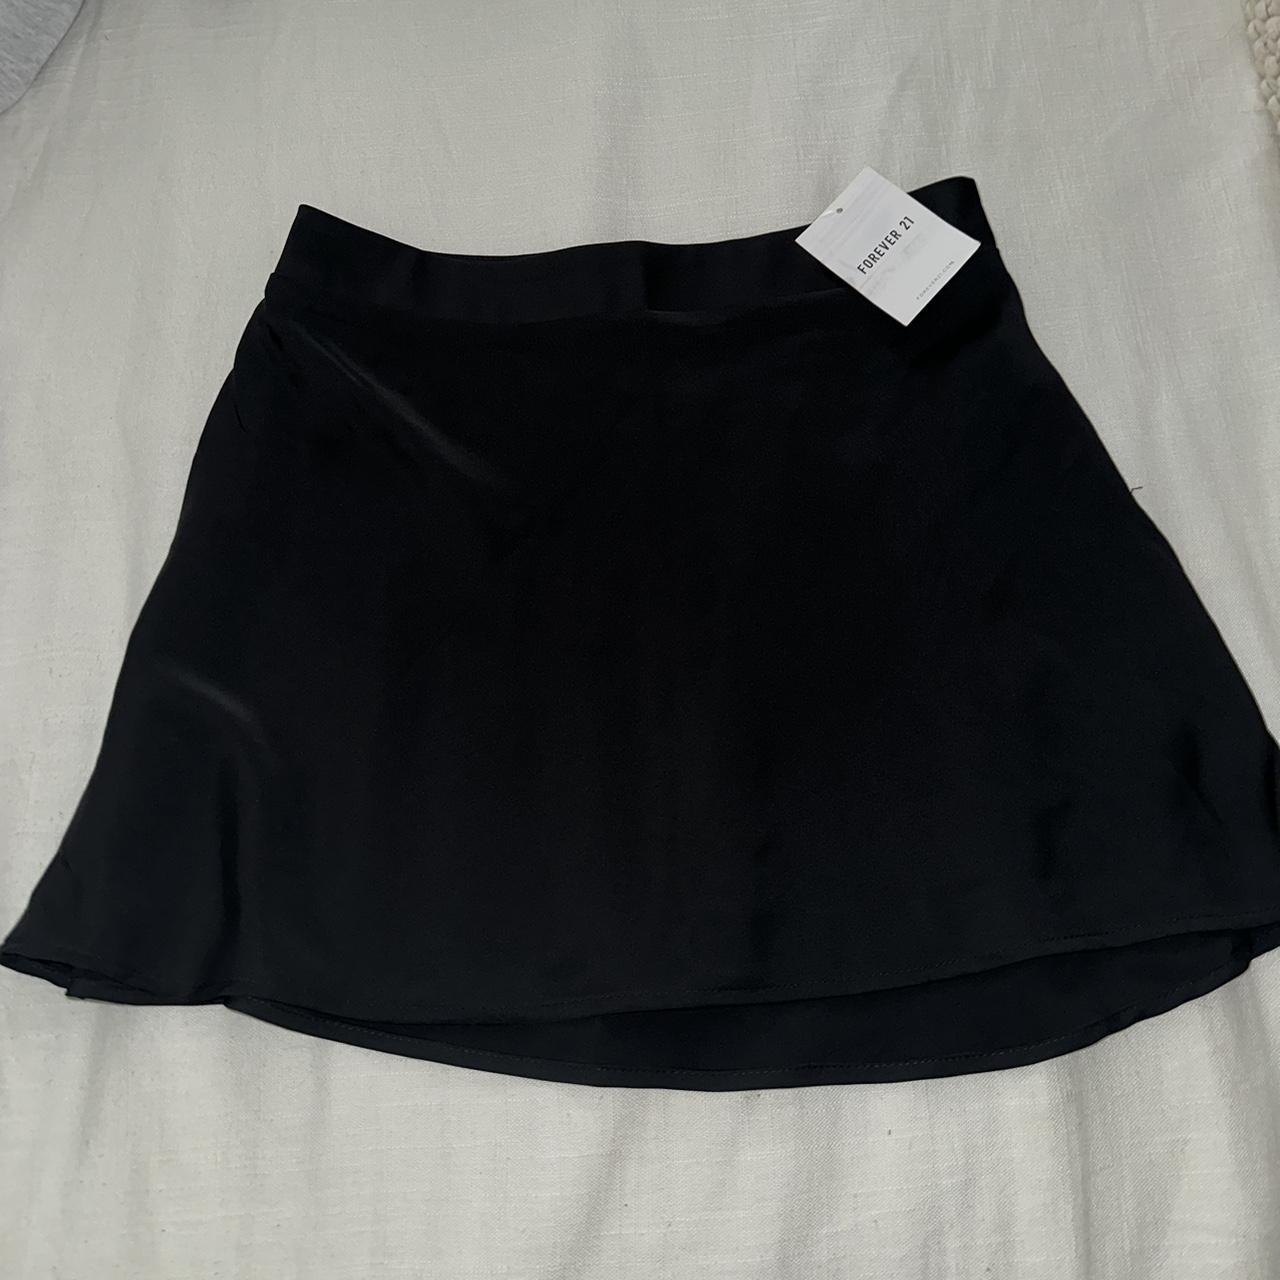 Black silk mini skirt Forever 21 Never worn (with... - Depop